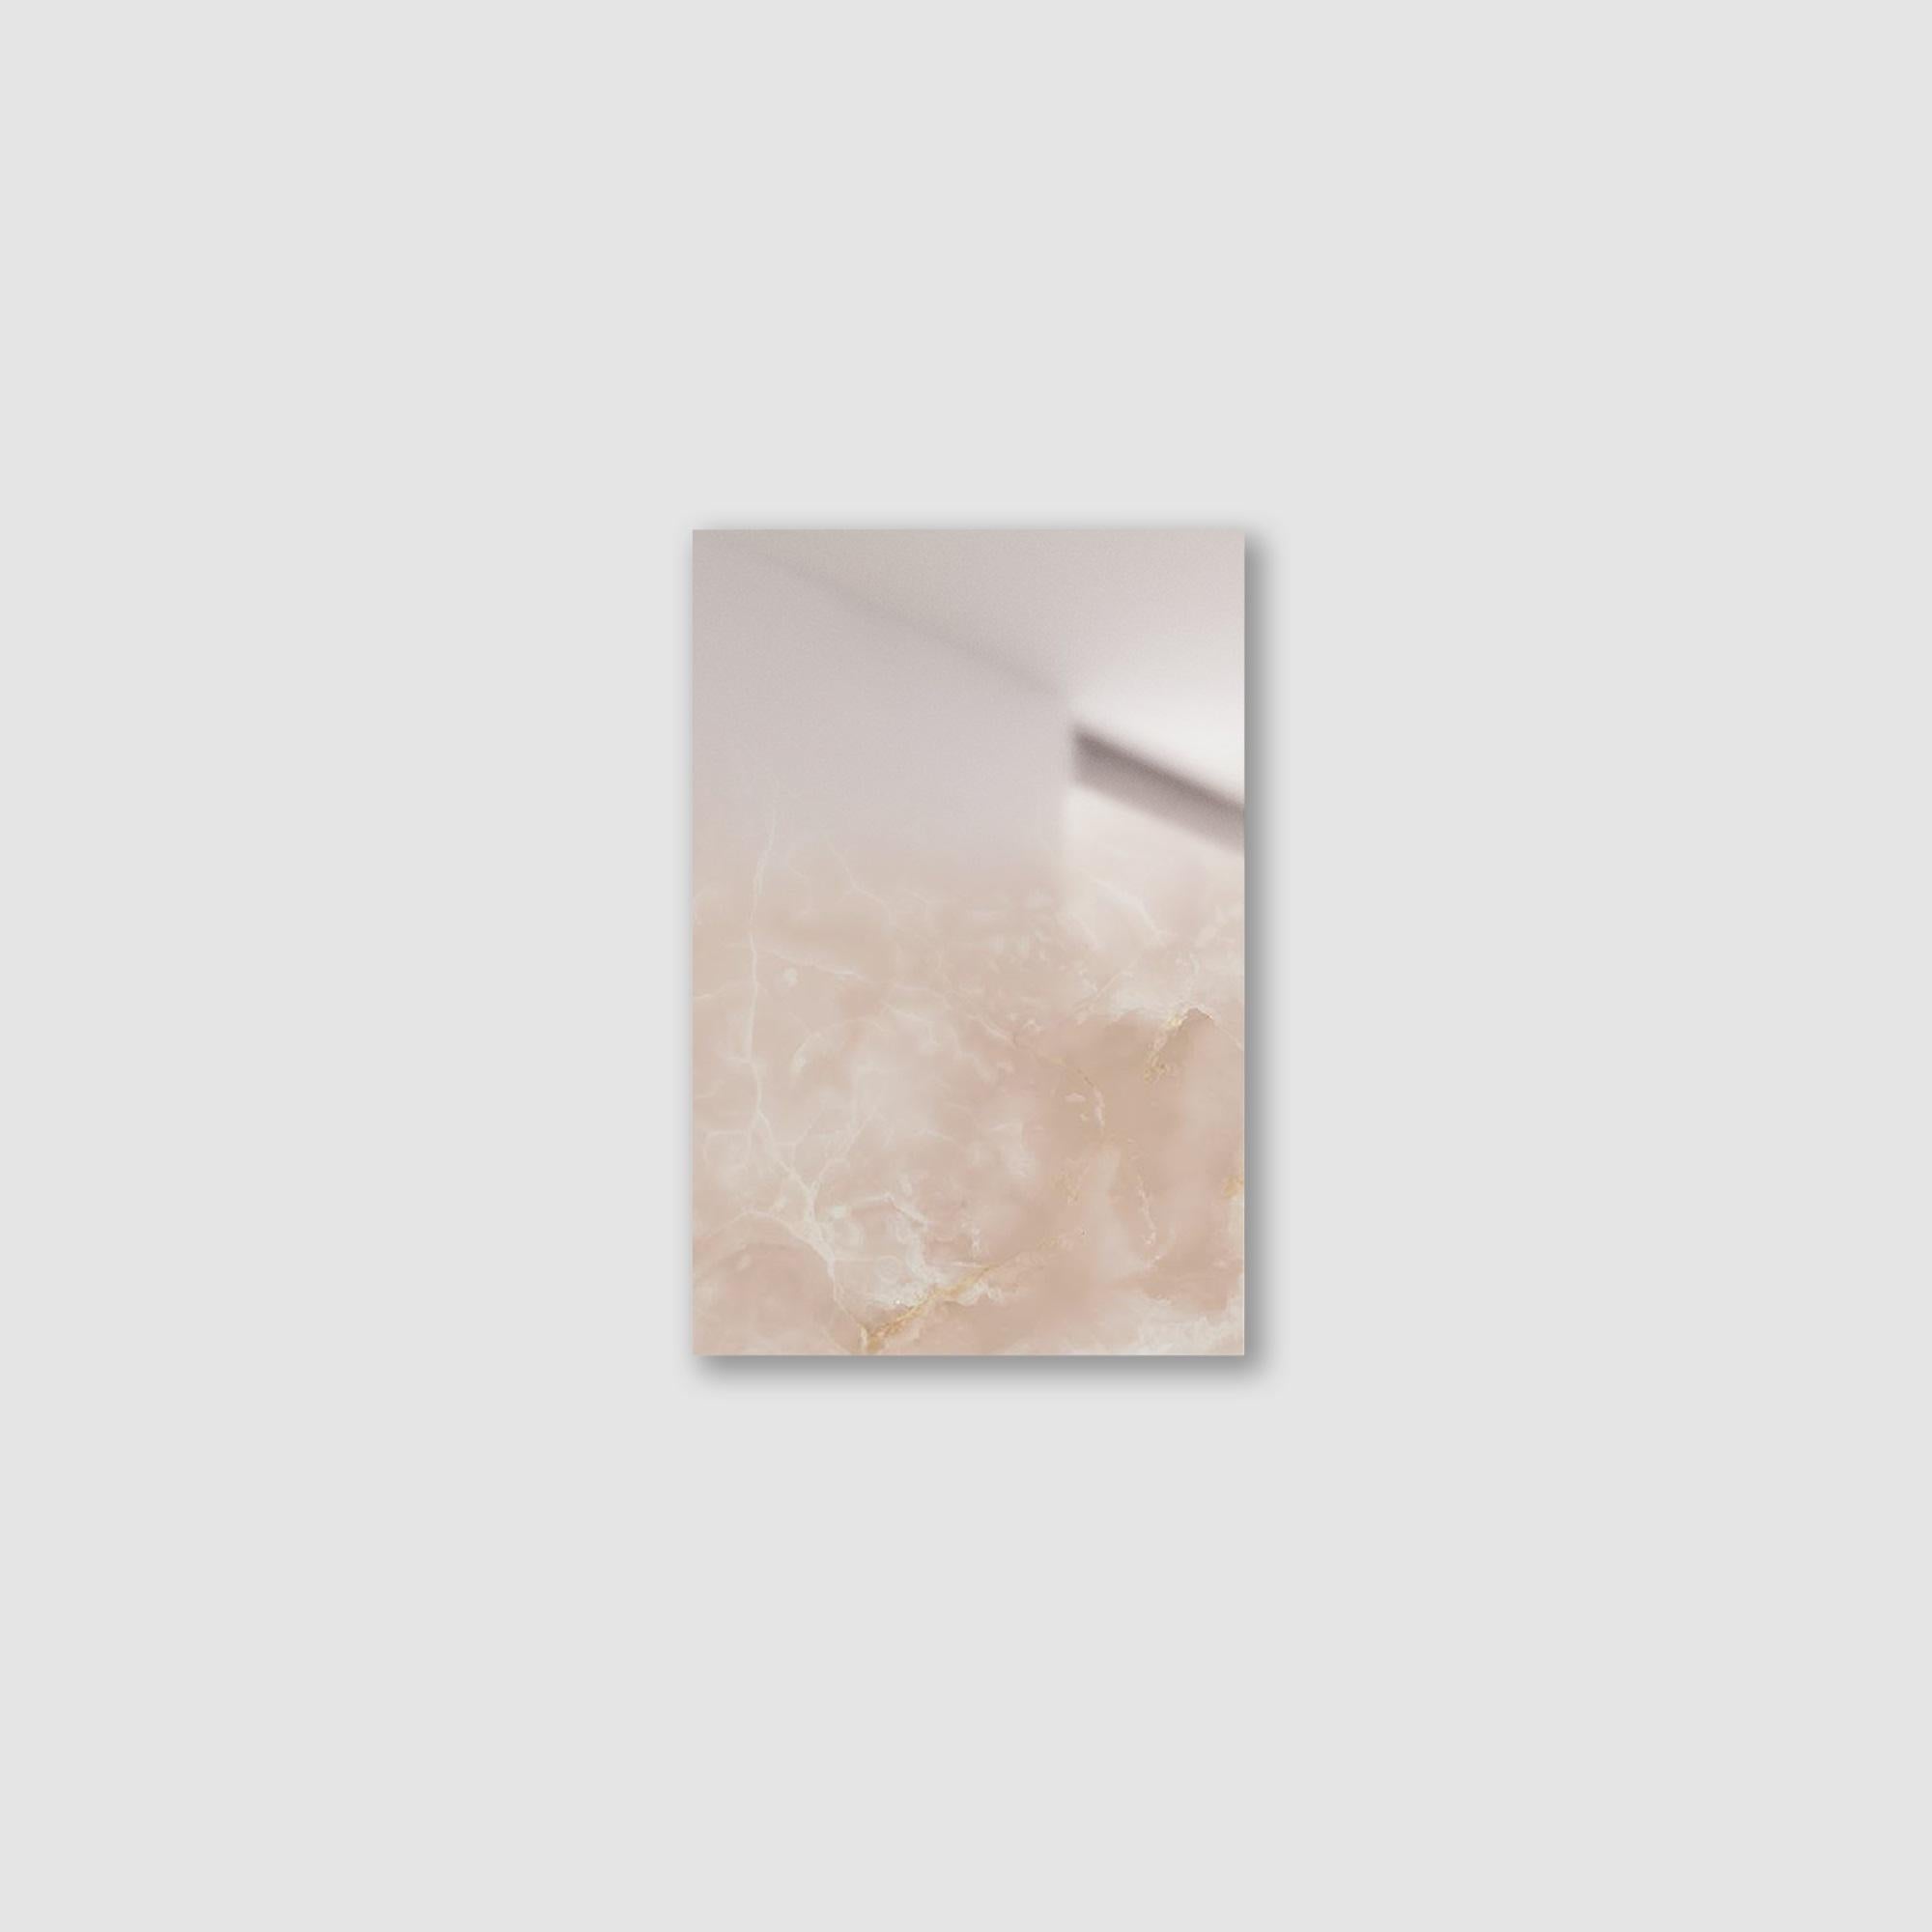 Miroir Zero XS rose par Formaminima
Édition limitée à 200 pièces. 
Dimensions : D 0,5 x L 21,5 x H 29 cm. 
MATERIAL : Onyx rose avec superposition de cristaux taillés à la main, finition miroir appliquée à la main et supports métalliques muraux